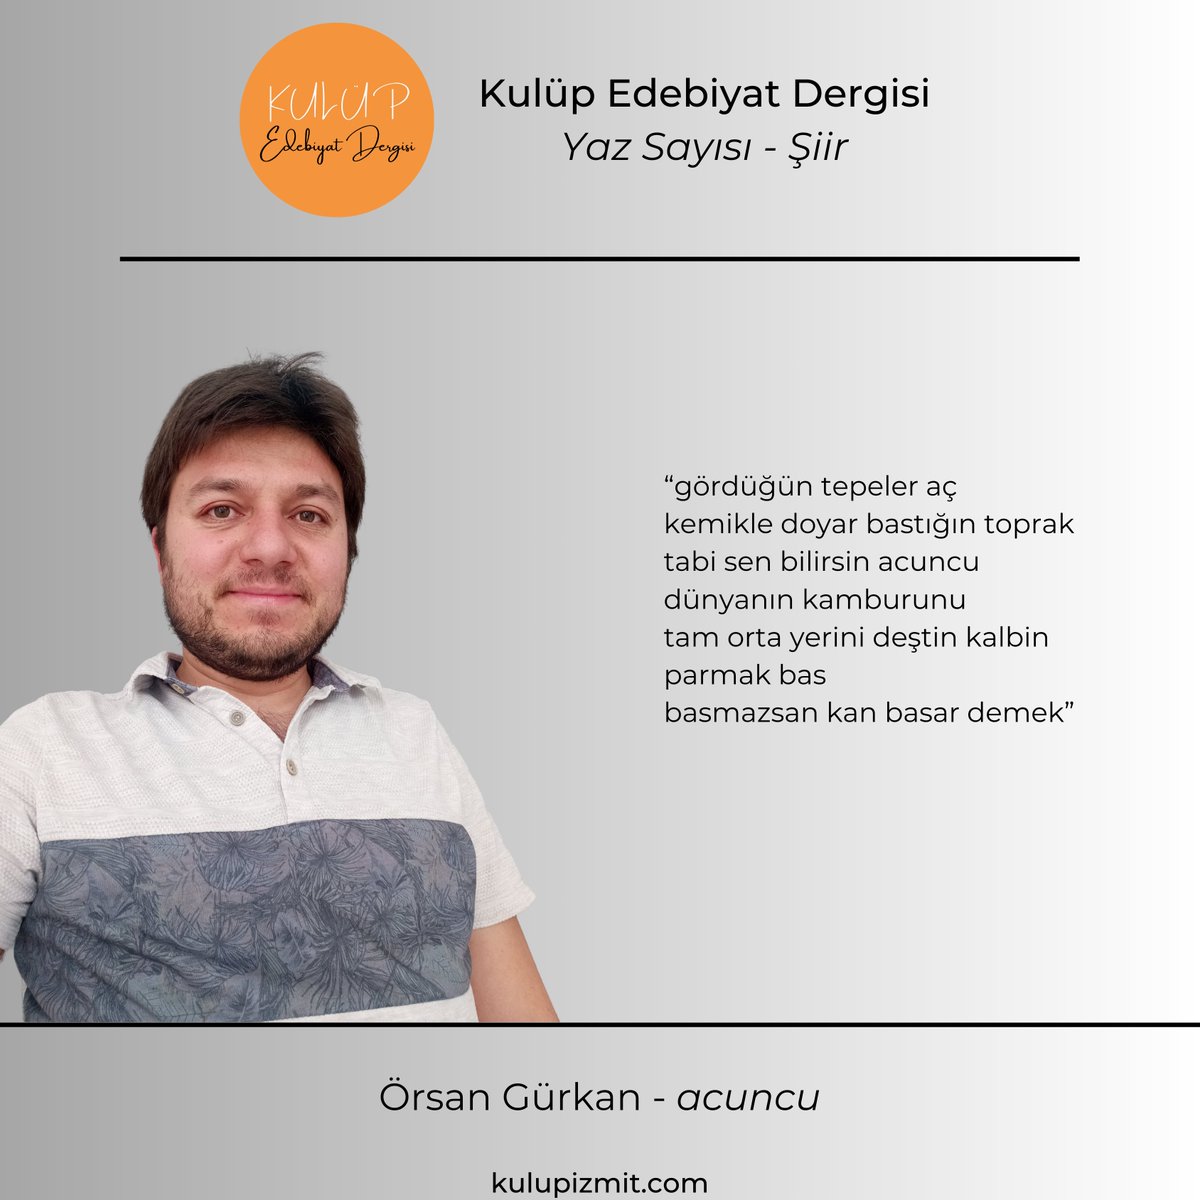 Örsan Gürkan, 'acuncu' şiiri ile dergimizin yaz sayısında yer aldı. Dergimize link aracılığıyla ulaşabilirsiniz. kulupizmit.com/dergi/ @orsangurkan